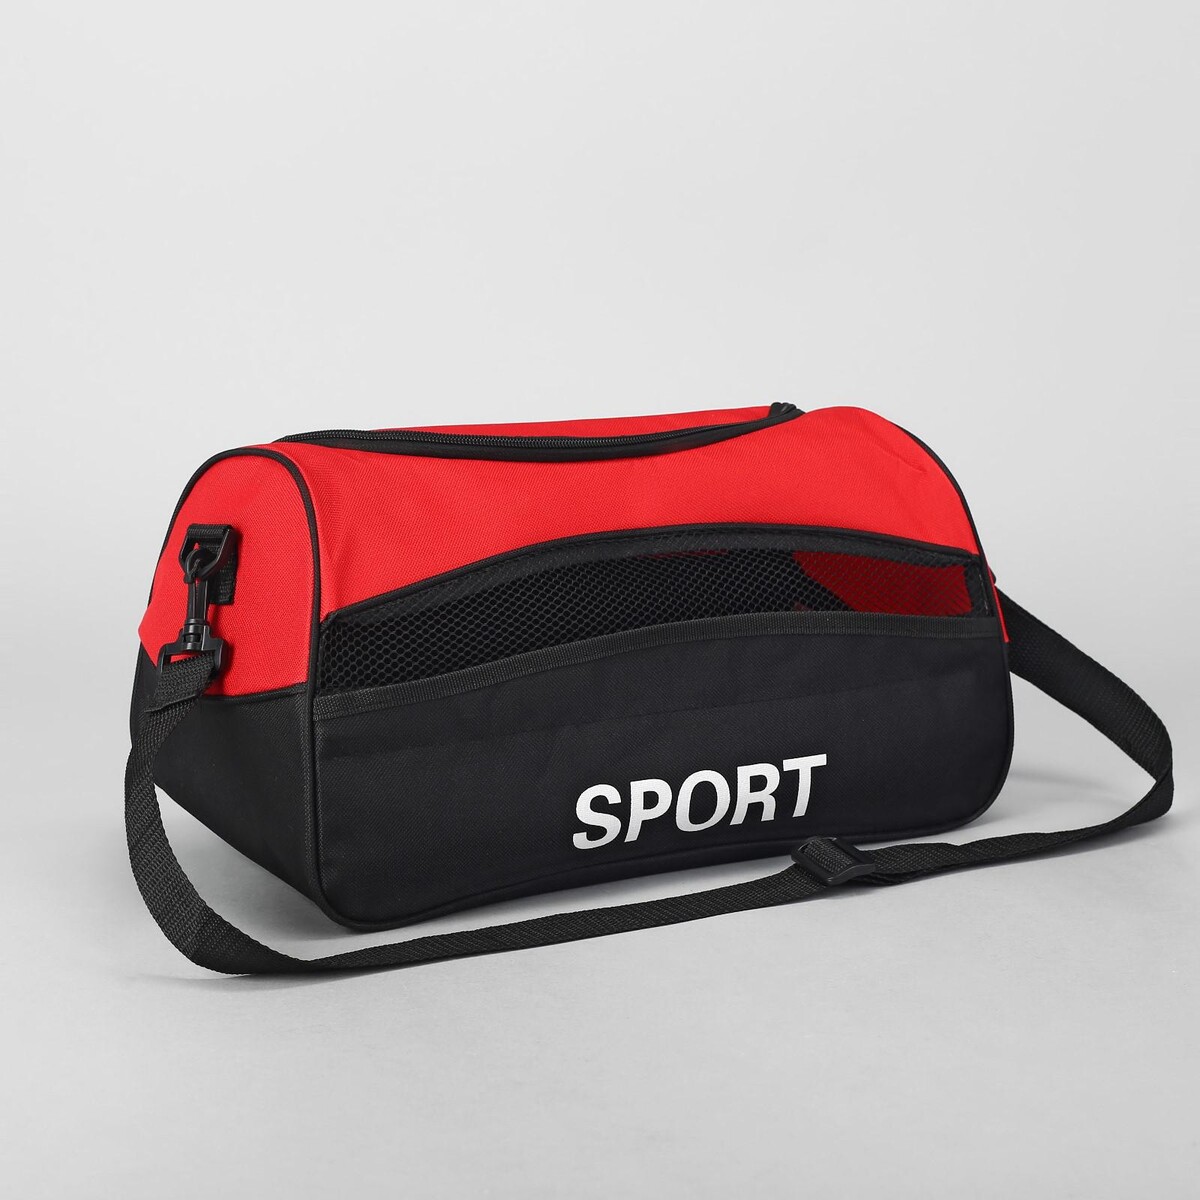 Сумка спортивная на молнии, наружный карман, длинный ремень, цвет красный/черный сумка спортивная на молнии длинный ремень триколор